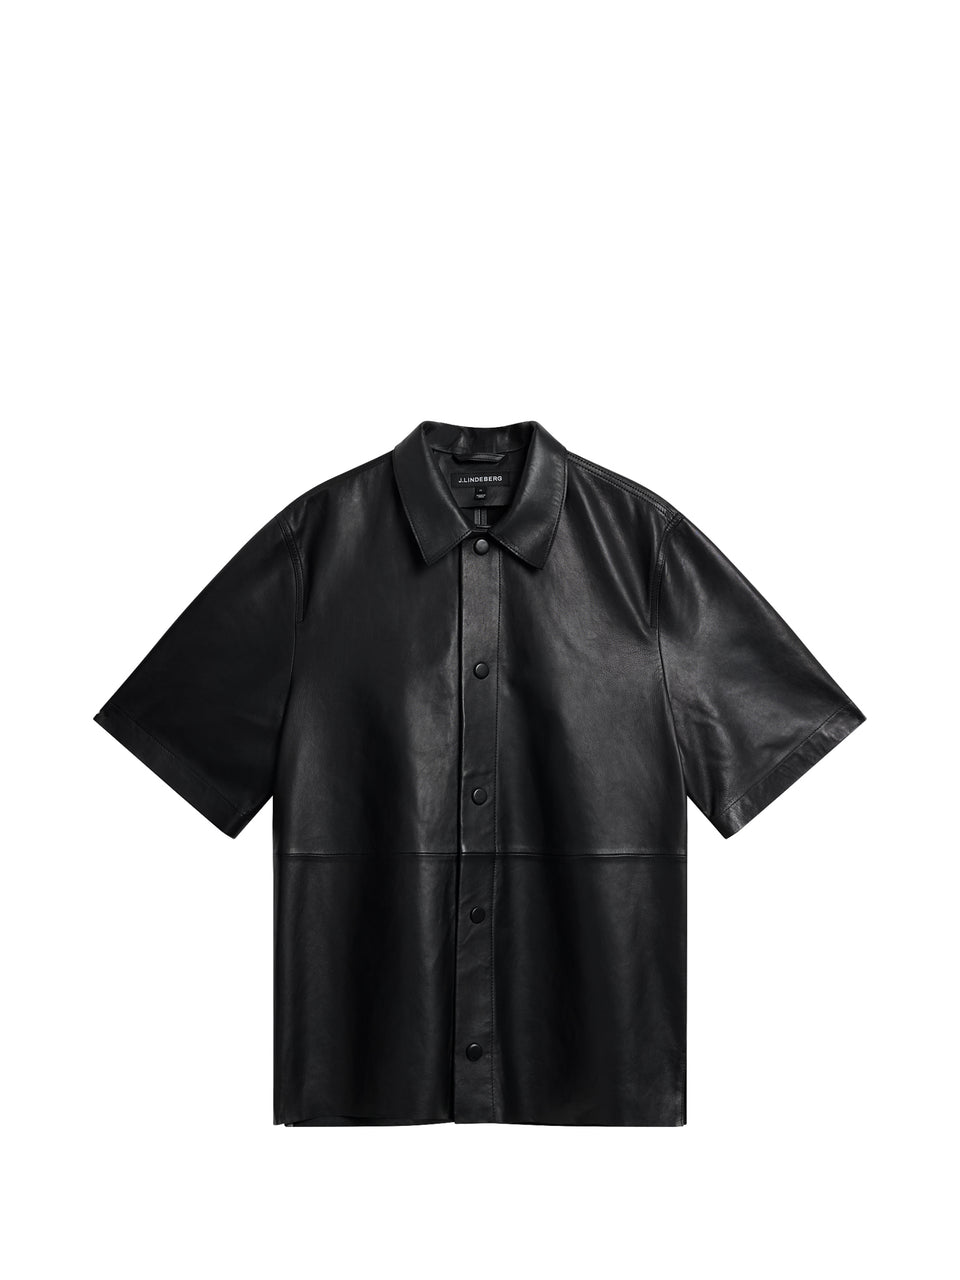 Shorty Leather Overshirt / Black